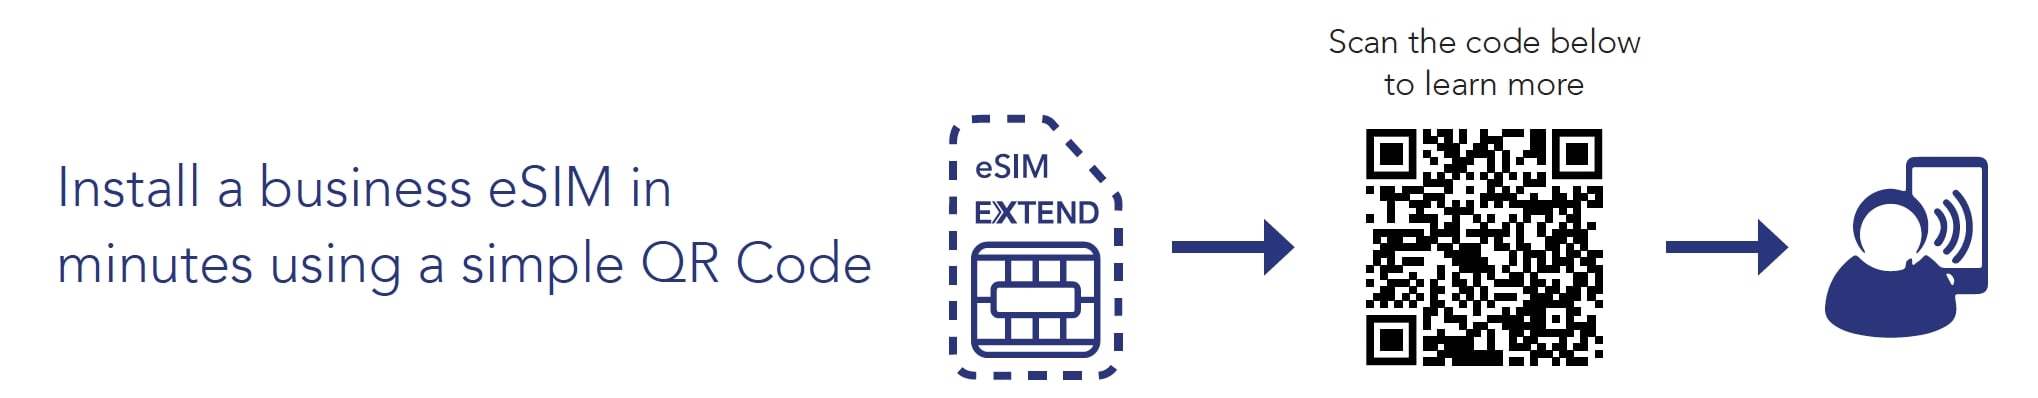 eSim extend diagram qr code